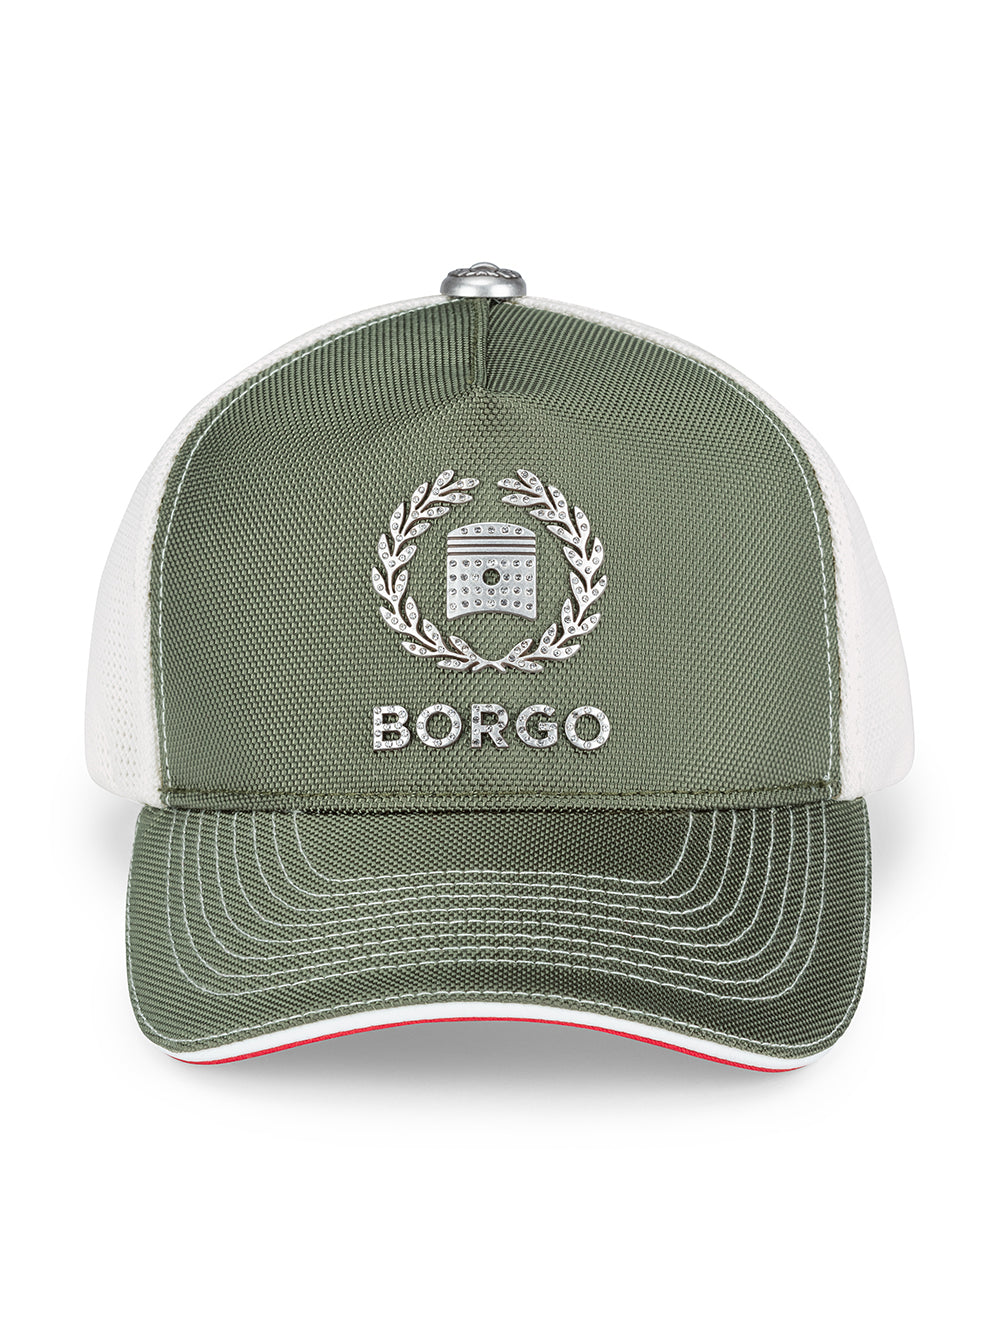 BORGO Americas Mix OWS Cap